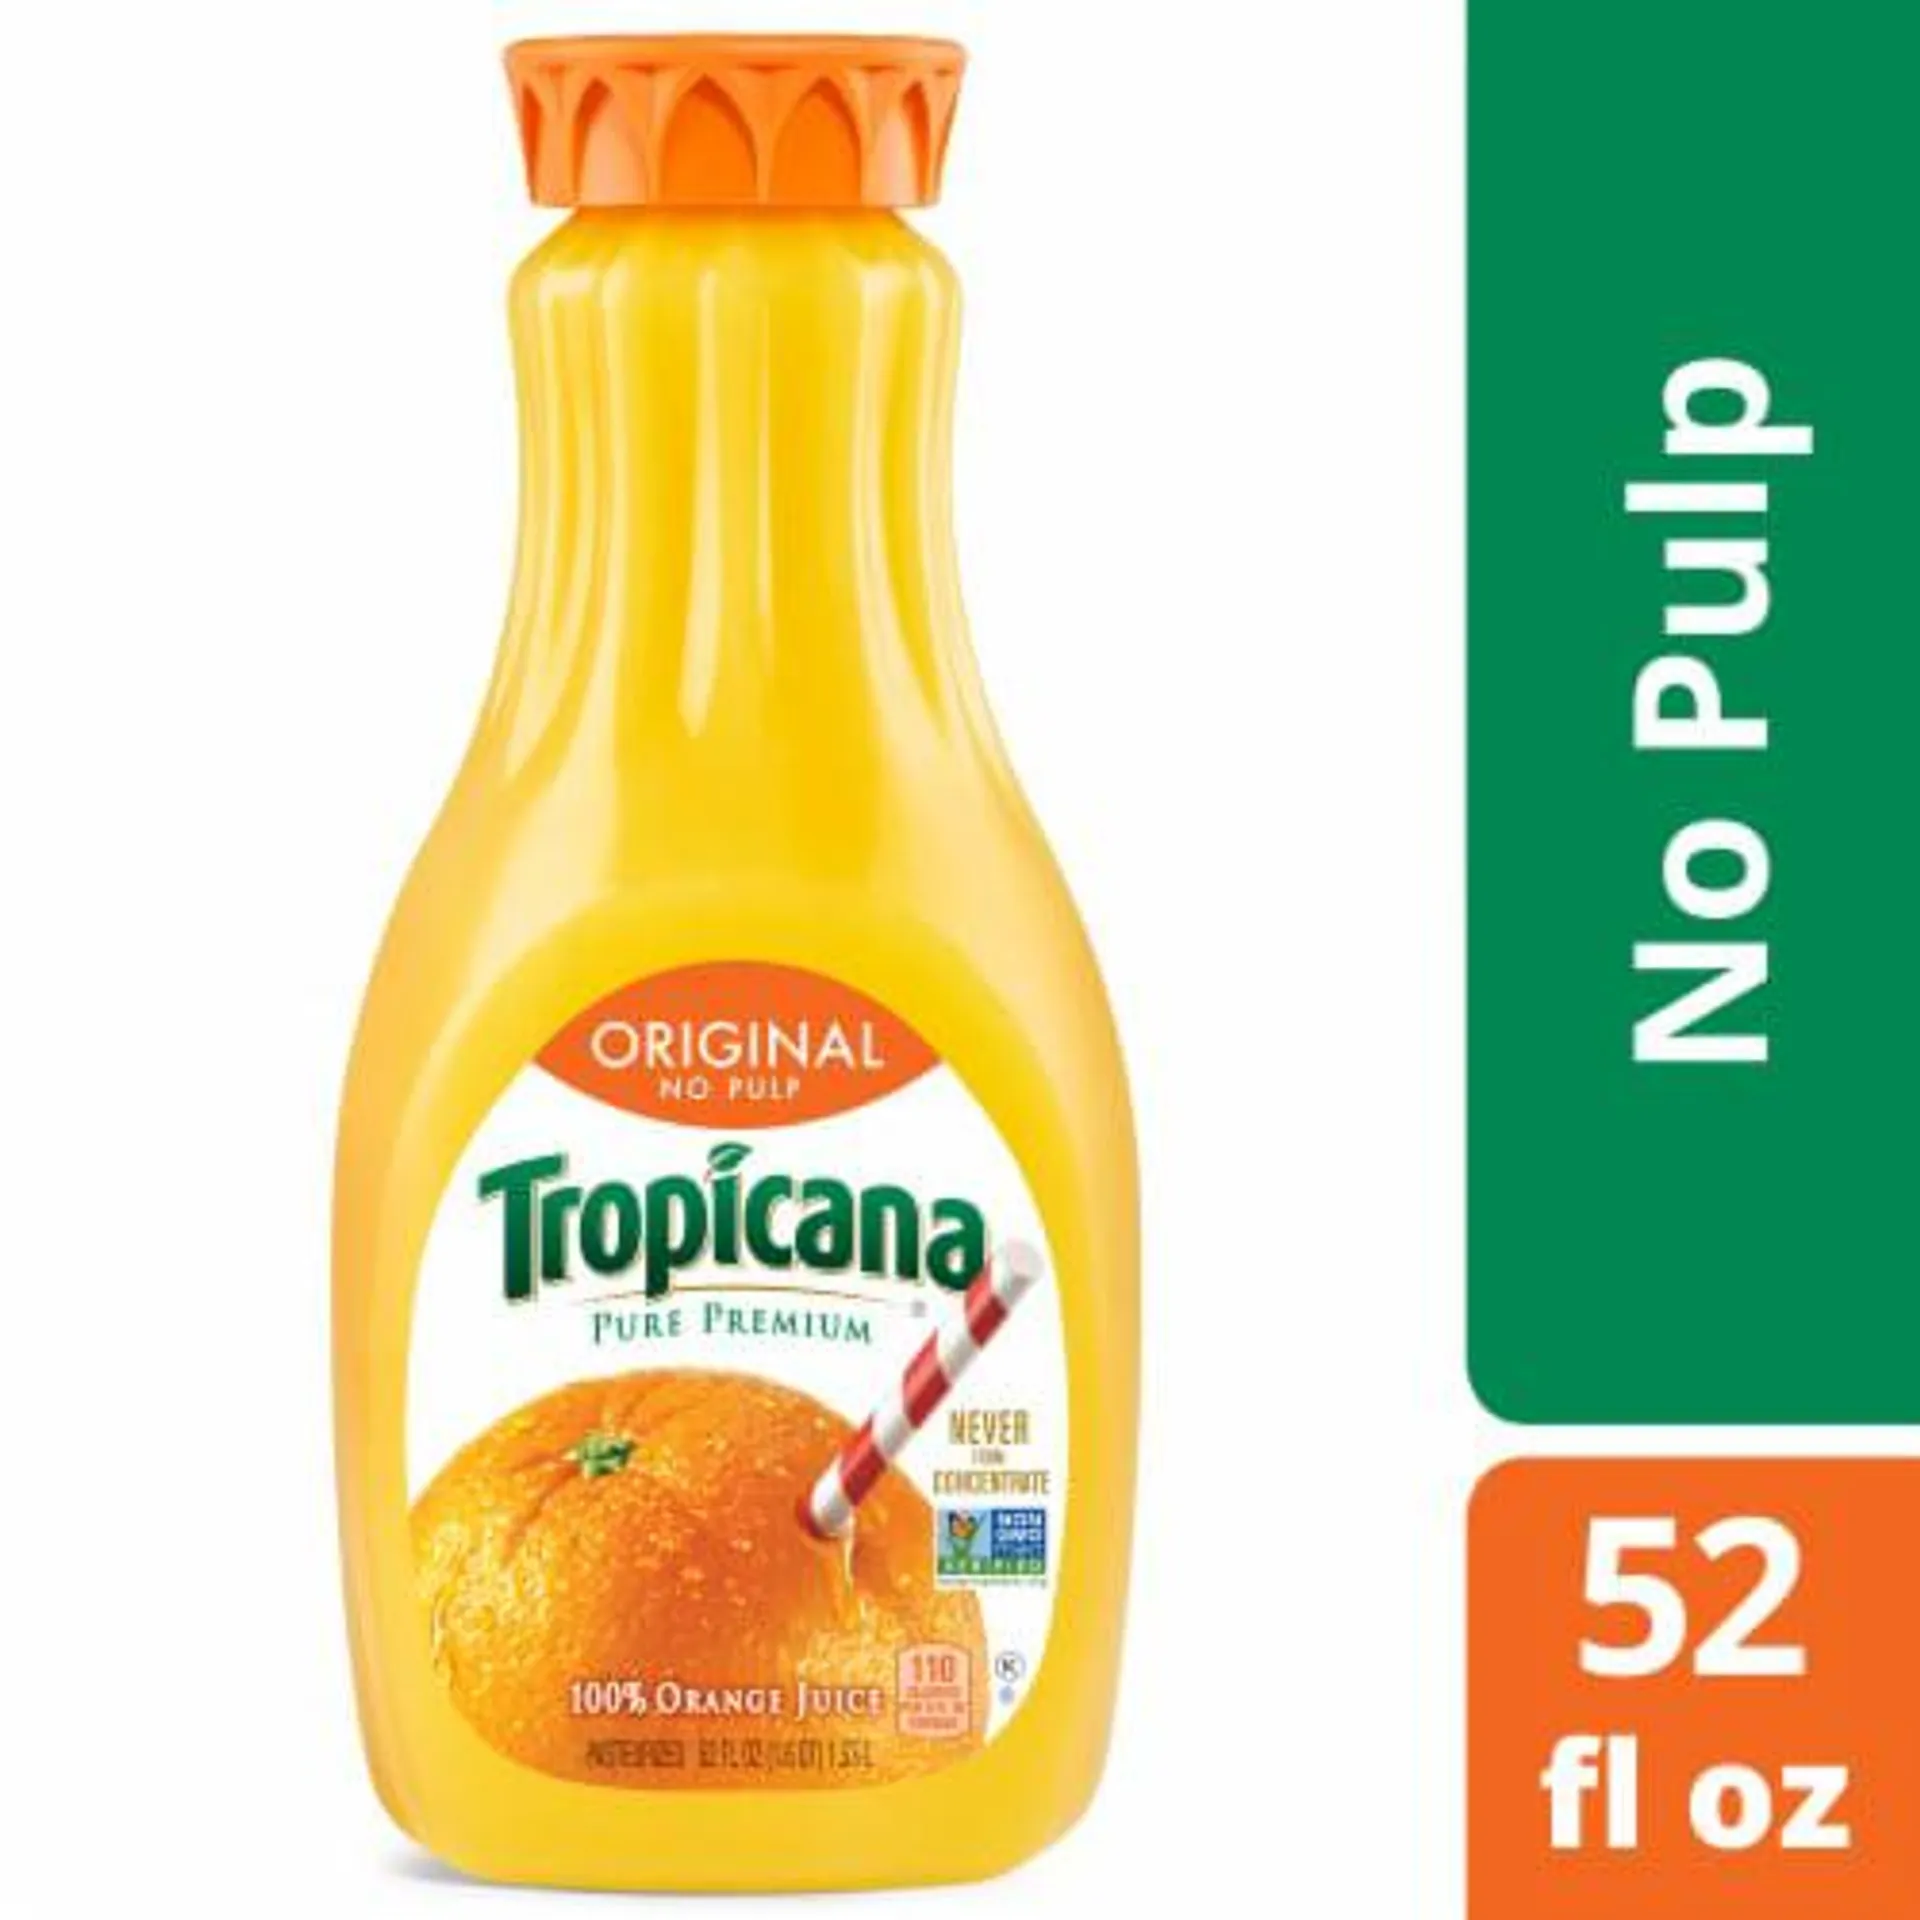 Tropicana® Pure Premium Original No Pulp Orange Juice